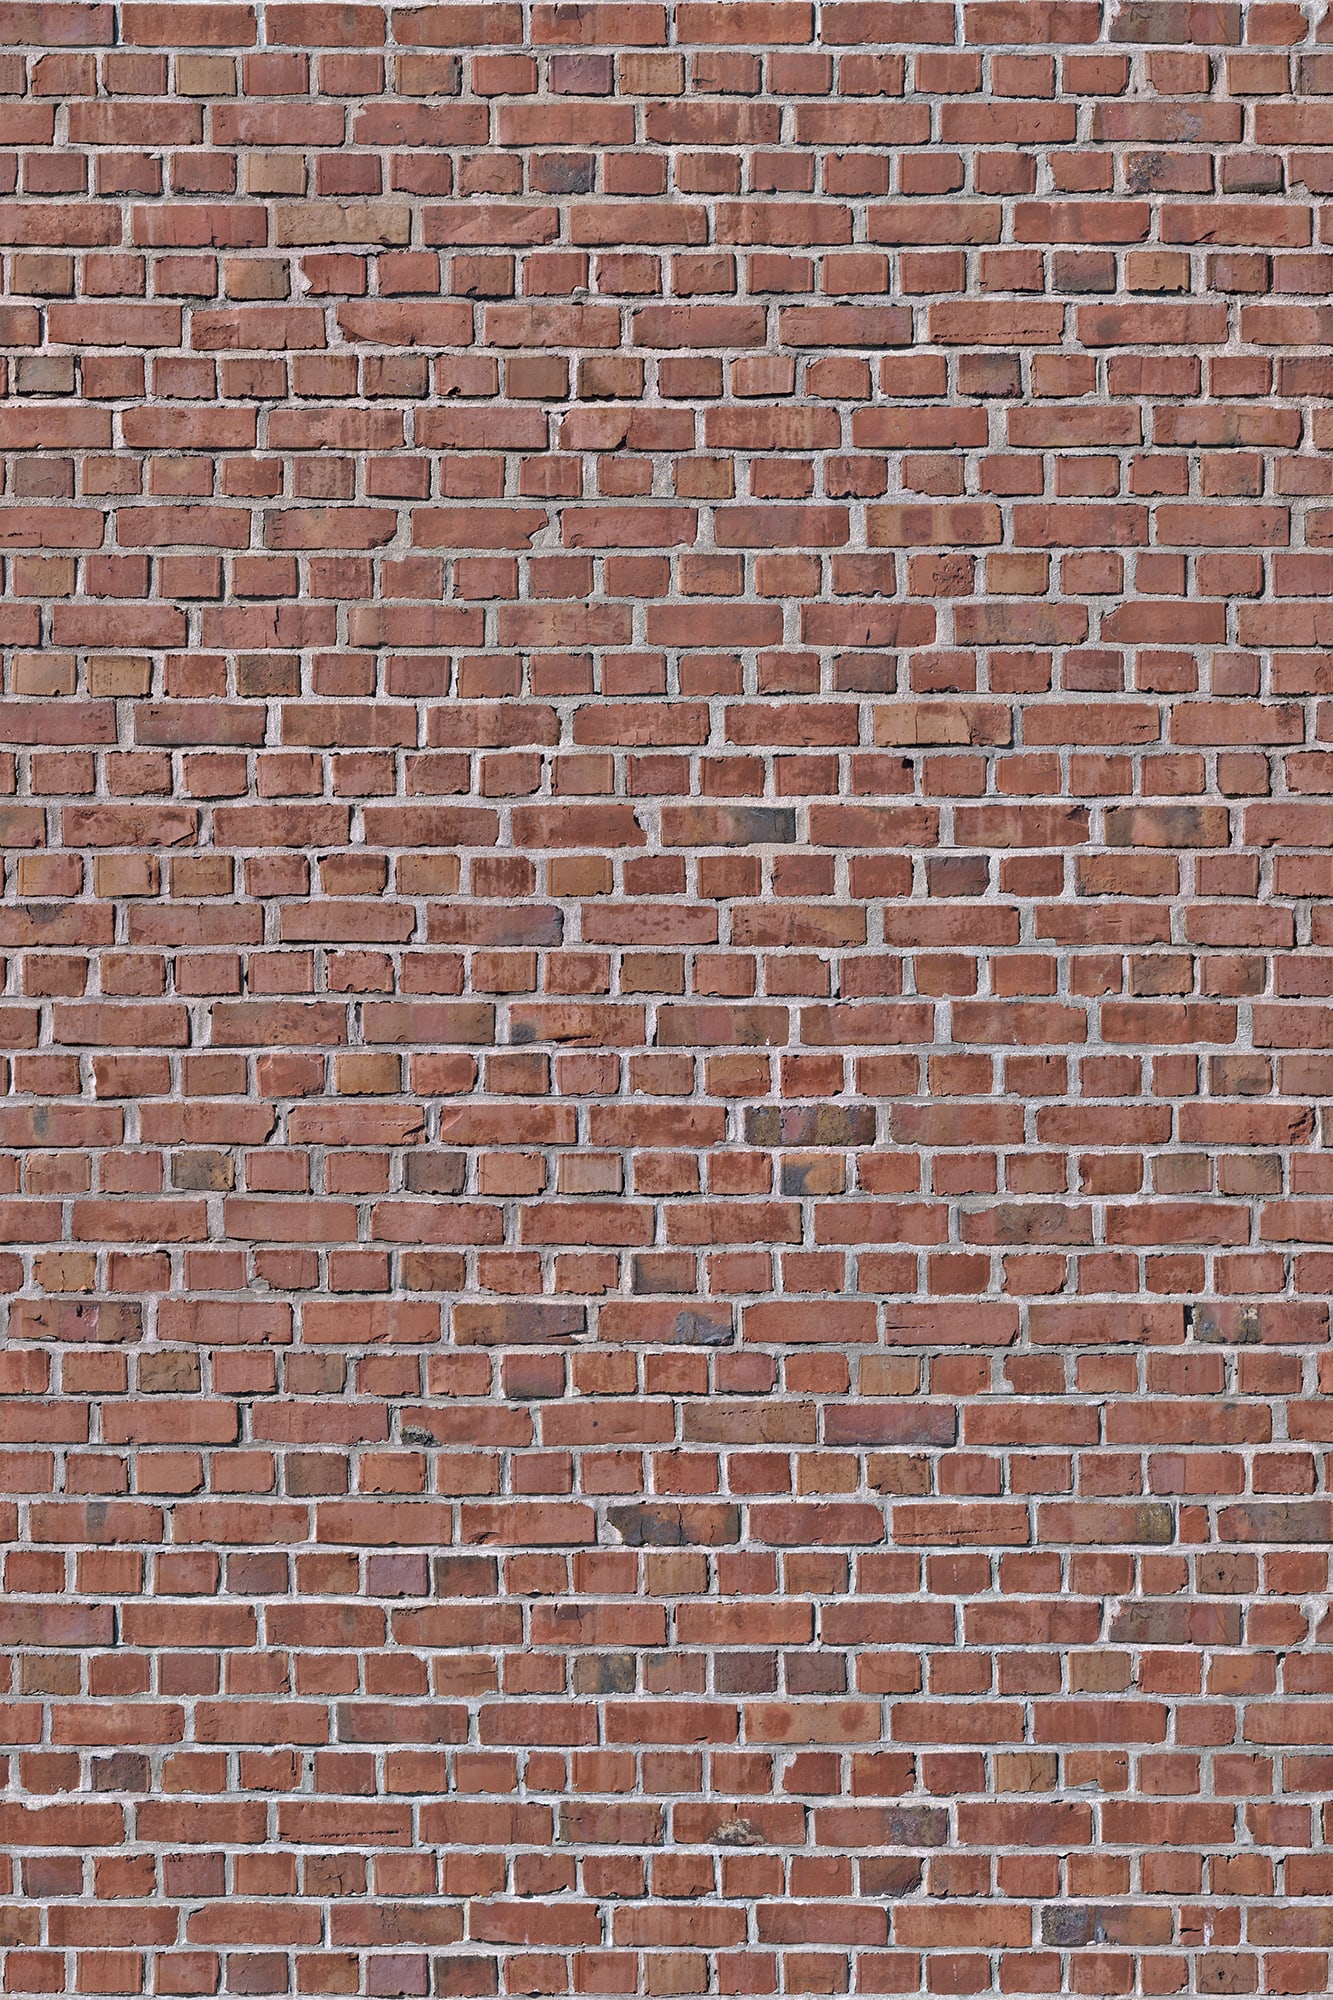 Brick Wall, red